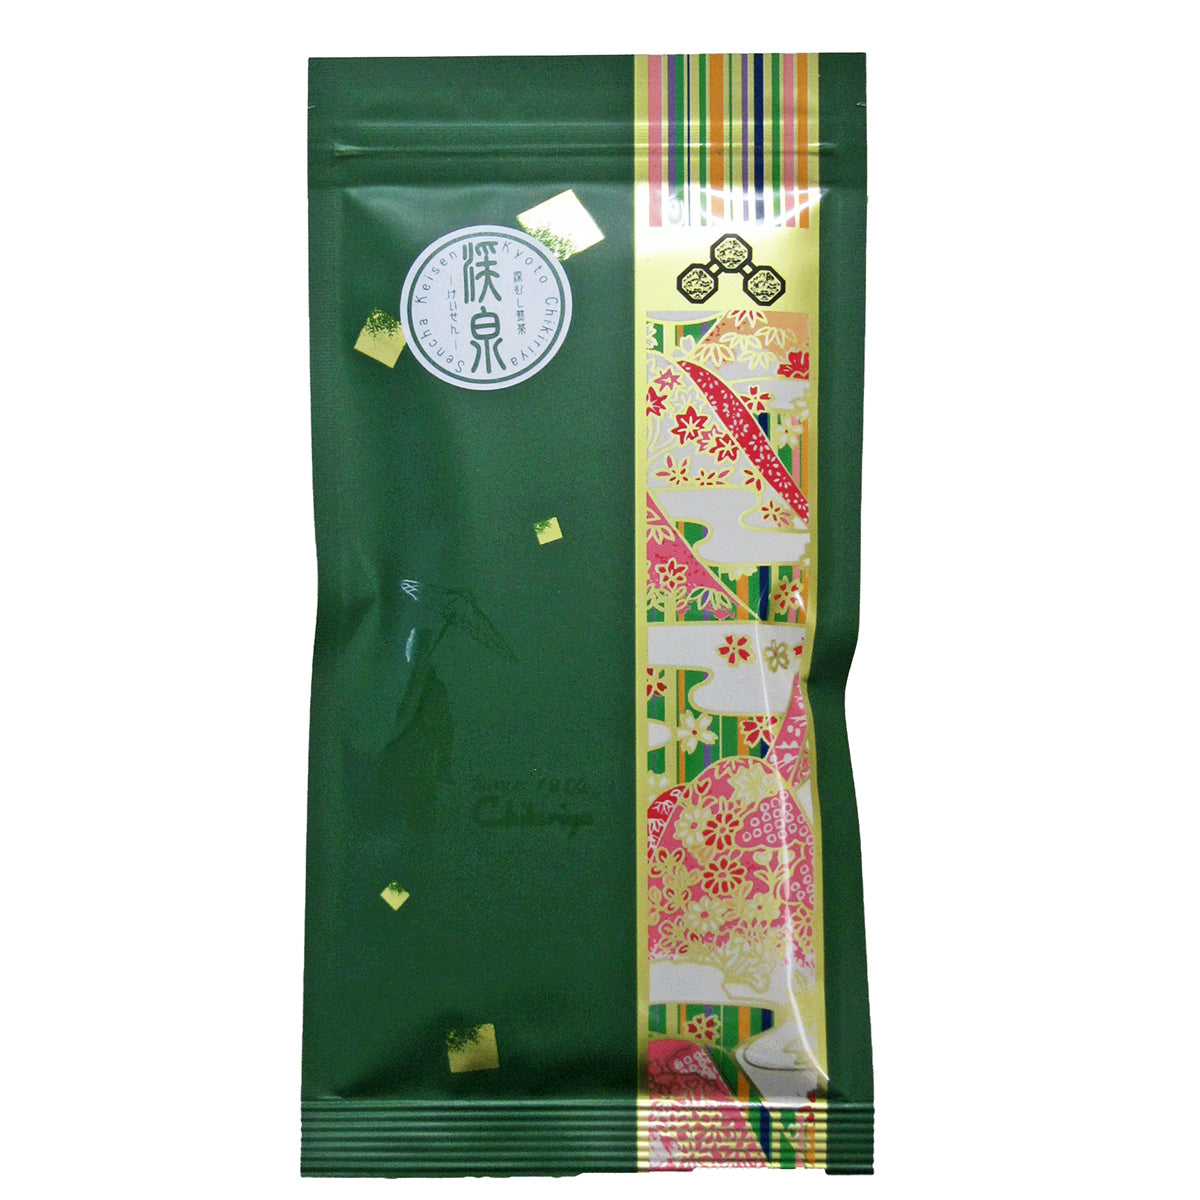 Fukamushi Sencha « Keisen » (thé vert japonais à l'étuvage prolongé) - 100g - feuilles de thé en vrac